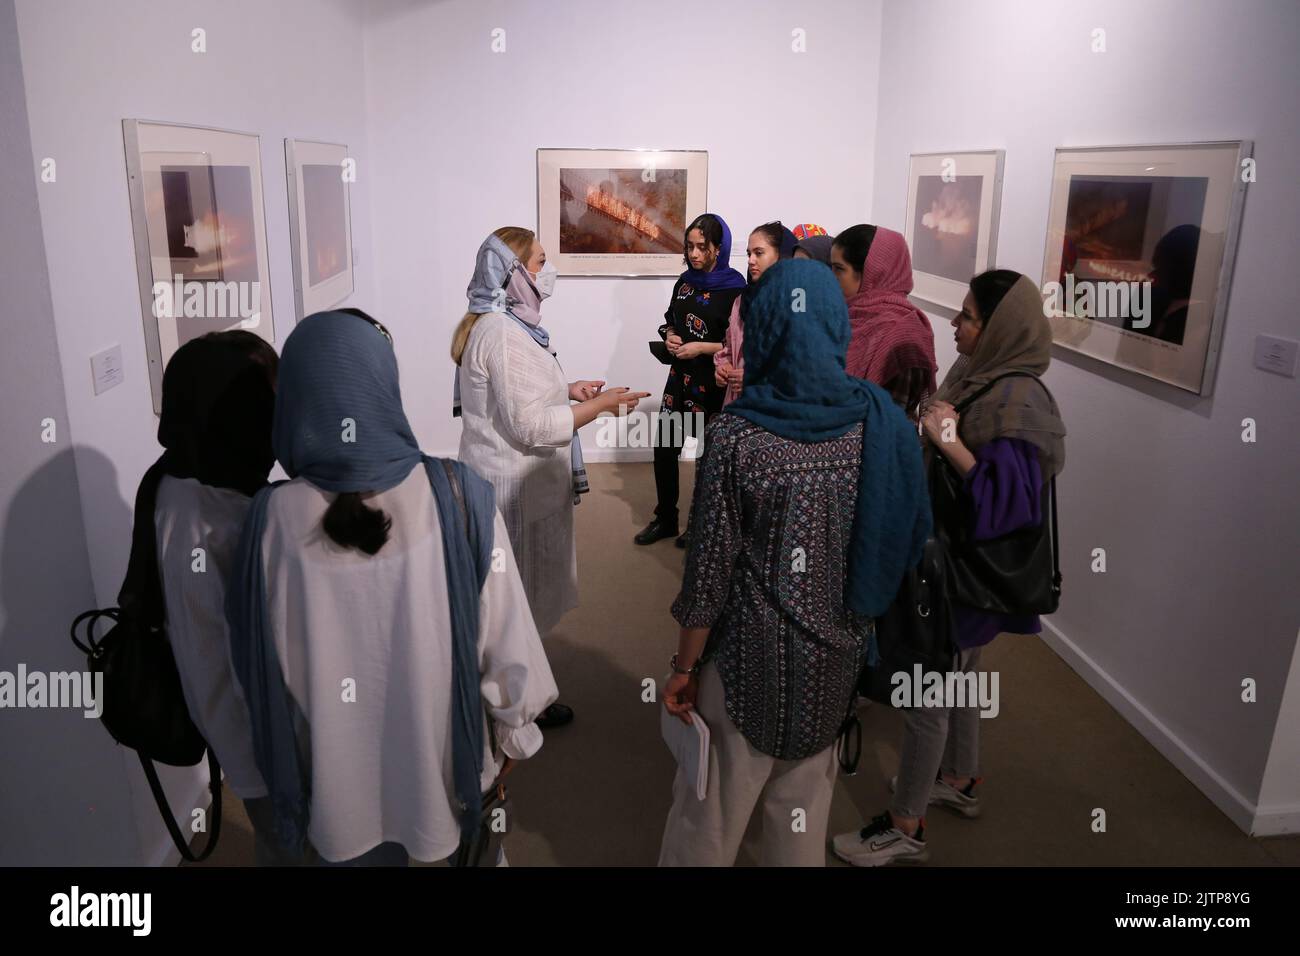 Téhéran, Téhéran, Iran. 30th août 2022. Les visiteurs iraniens regardent des œuvres d'art conceptuelles lors de leur visite, l'exposition « le Minimalisme et l'art conceptuel », qui présente des œuvres d'artistes américains et européens des siècles 19th et 20th, au Musée d'art contemporain de Téhéran, dans la capitale iranienne, sur 30 août 2022. Plus de 20 000 000 personnes ont afflué vers un musée iranien présentant des dizaines d'œuvres d'artistes occidentaux renommés, certaines pour la première fois -- partie d'un Trésor gazonné avant la Révolution islamique. La collection du musée est réputée pour être la plus grande collection de ma moderne Banque D'Images